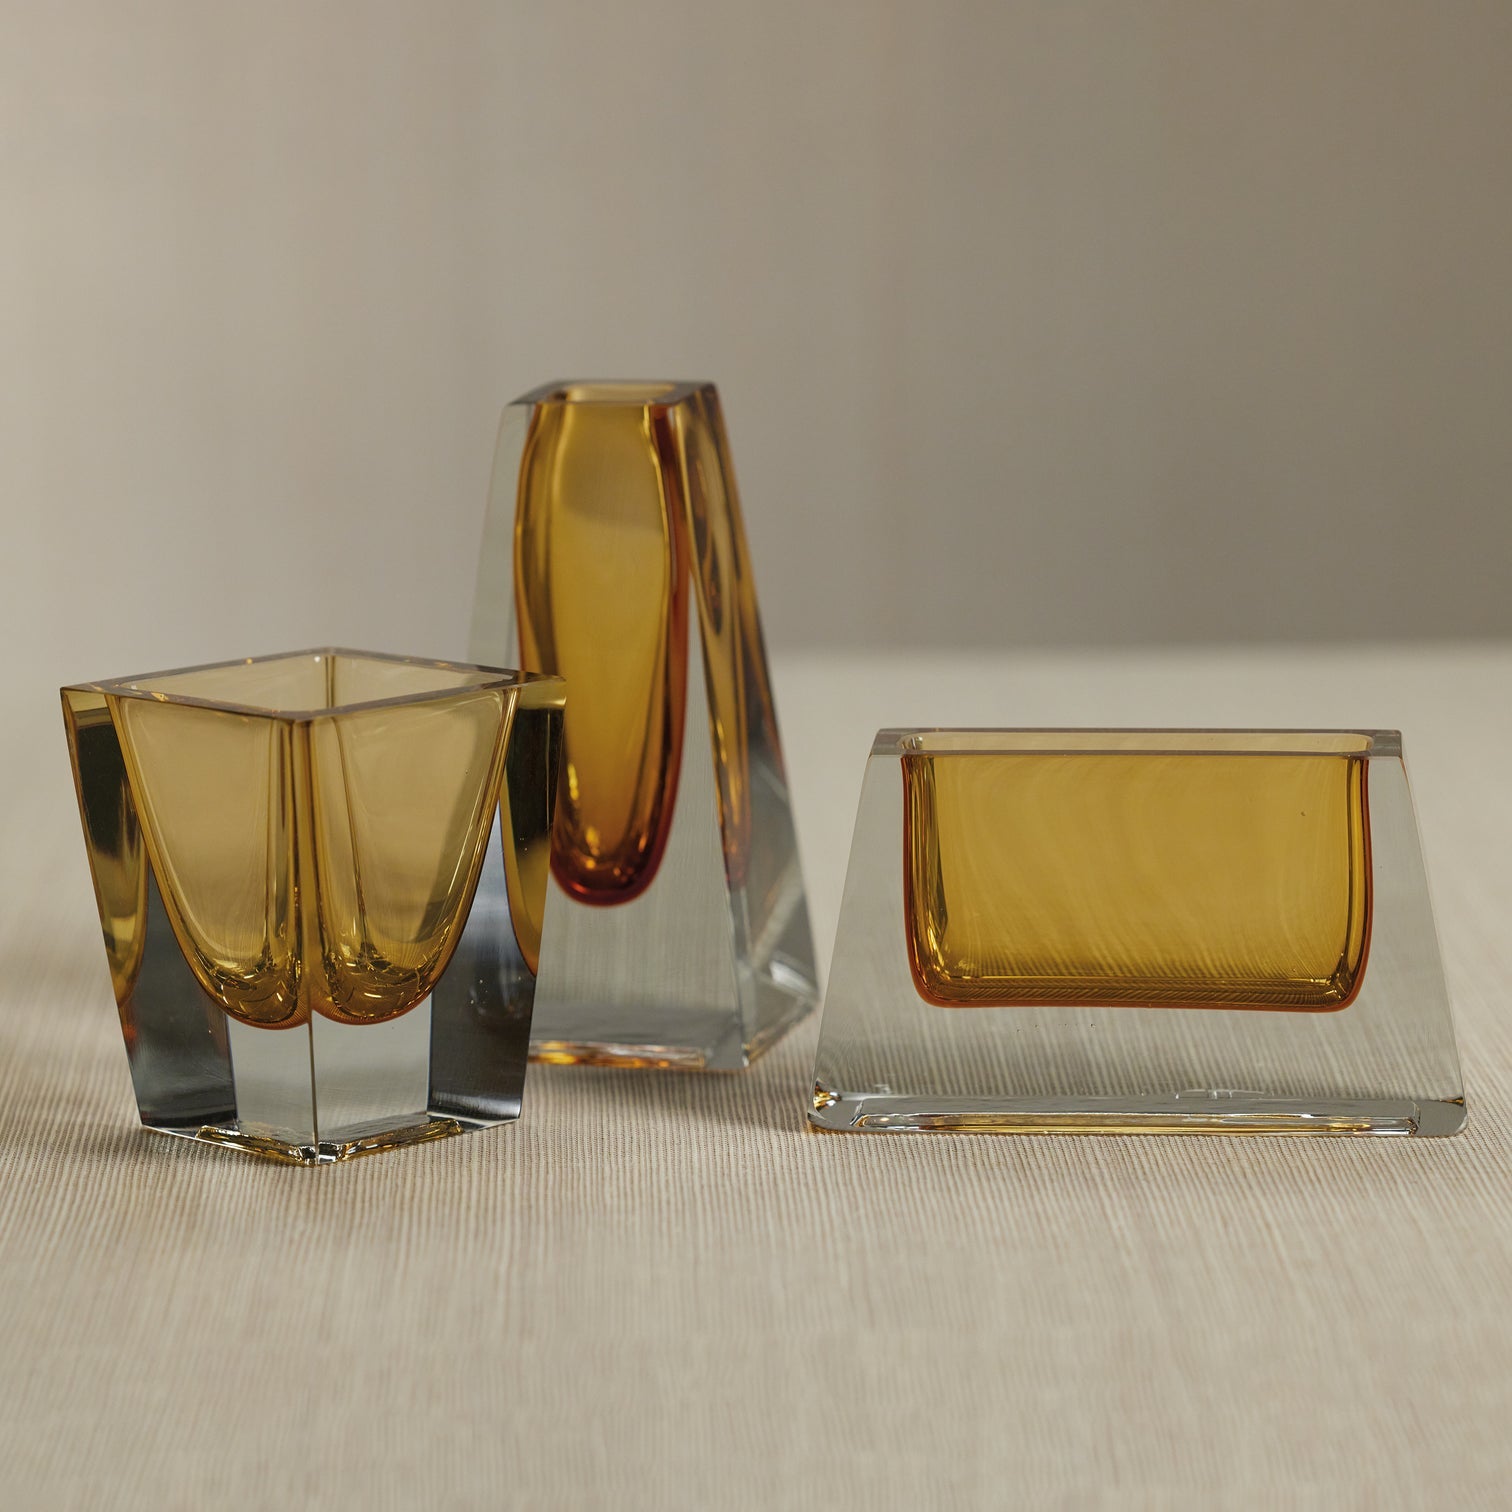 Corinthia Polished Glass Vase - Amber